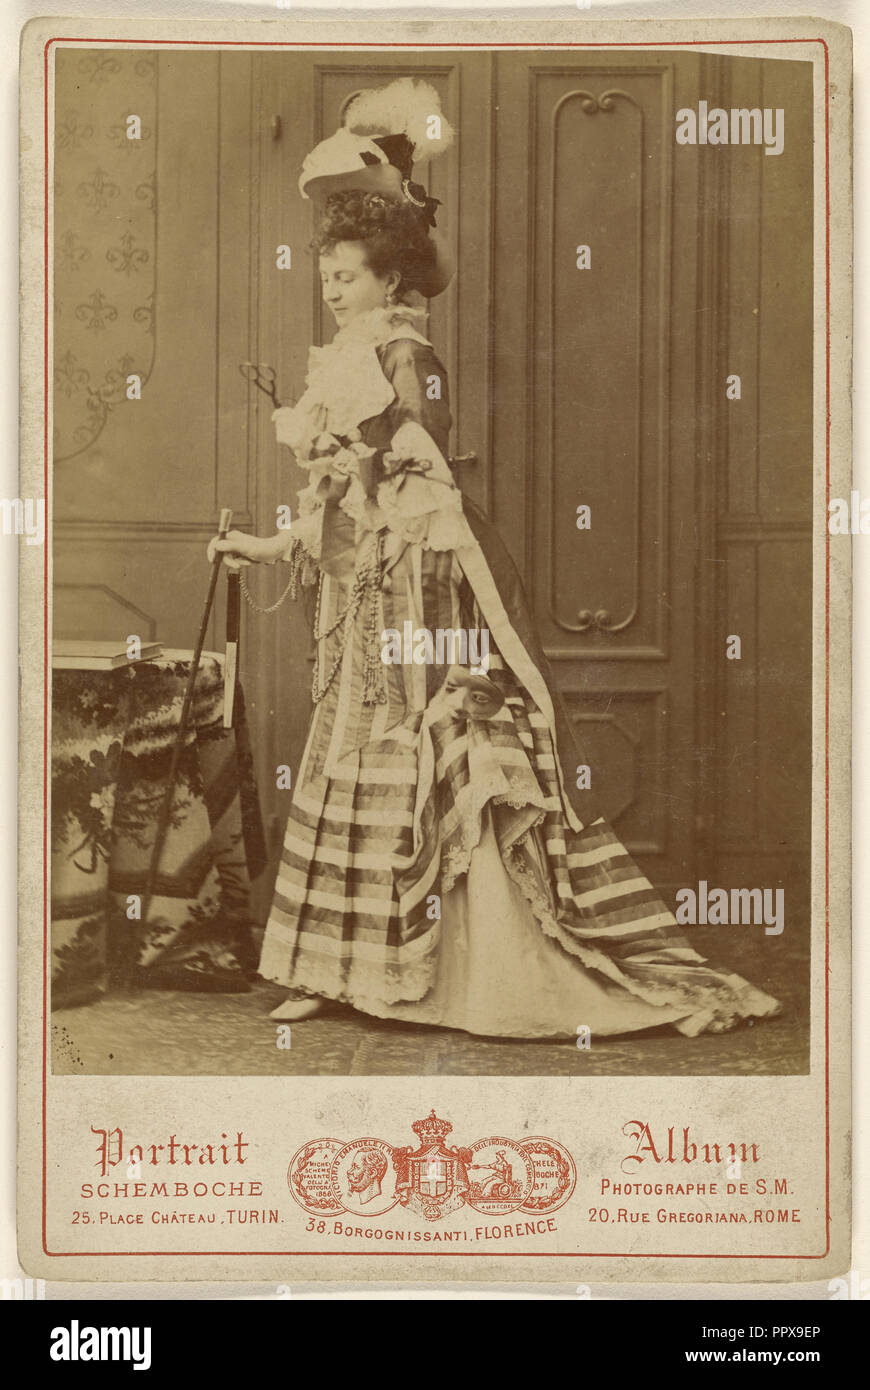 Ritratto a figura intera di un ben vestito donna con bastone da passeggio; Michele Schemboche, italiano, attivo Torino, Firenze e Roma Foto Stock